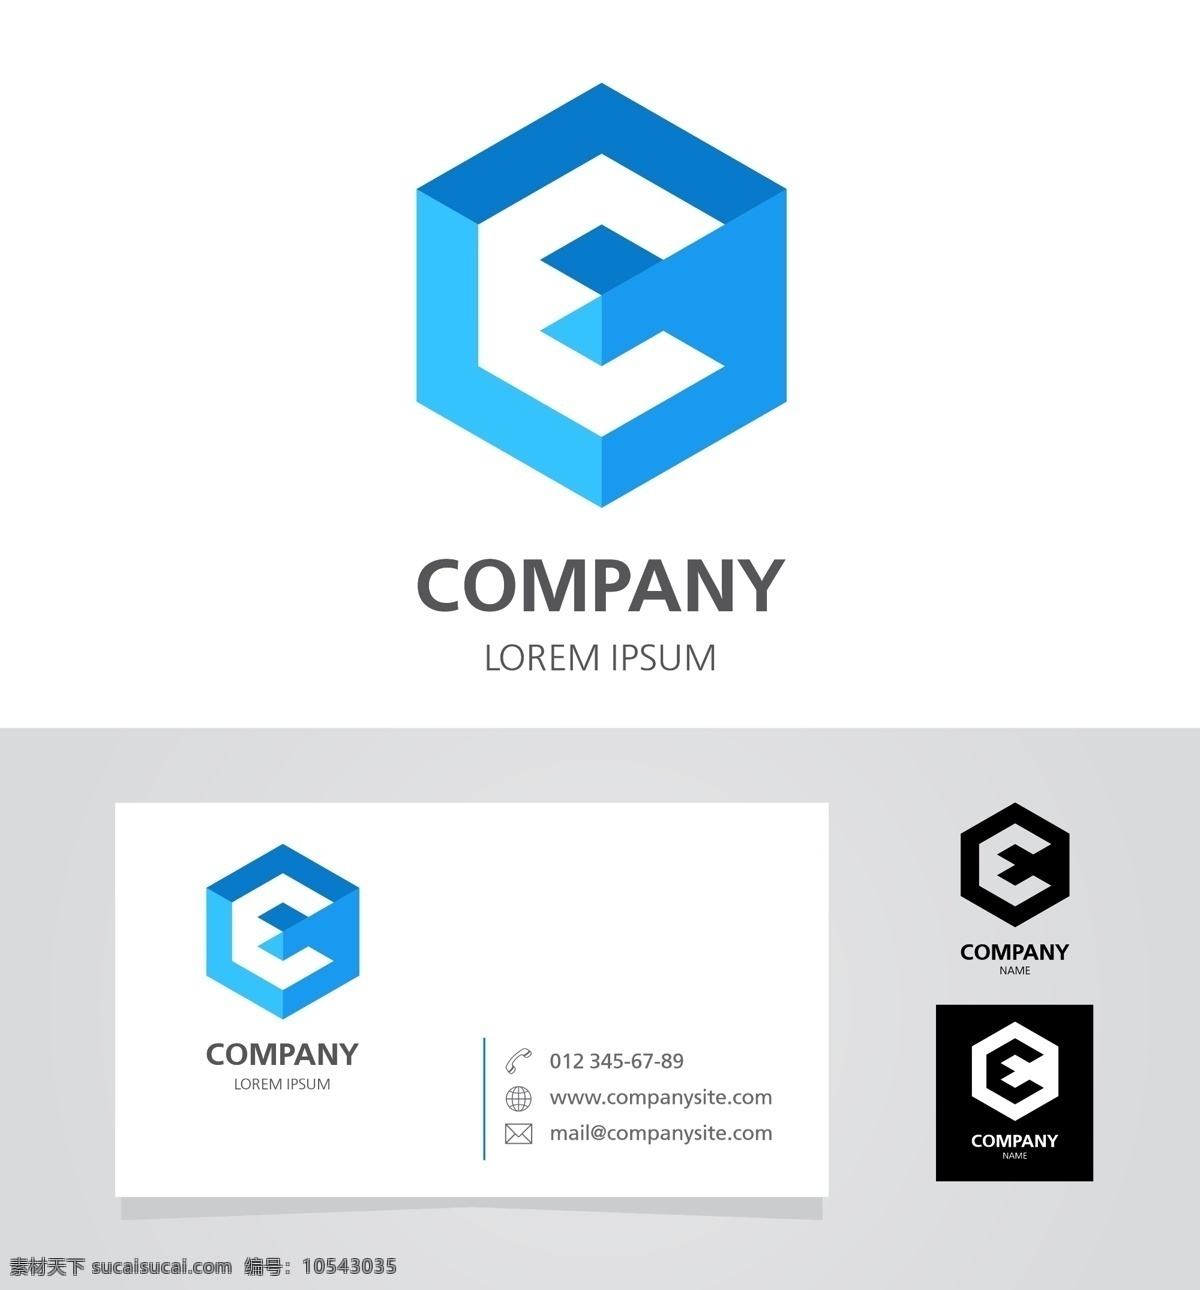 互联网 企业 标识 logo 科技 标志 创意 广告 简约 科技logo 领域 多用途 公司 企业标识 企业logo